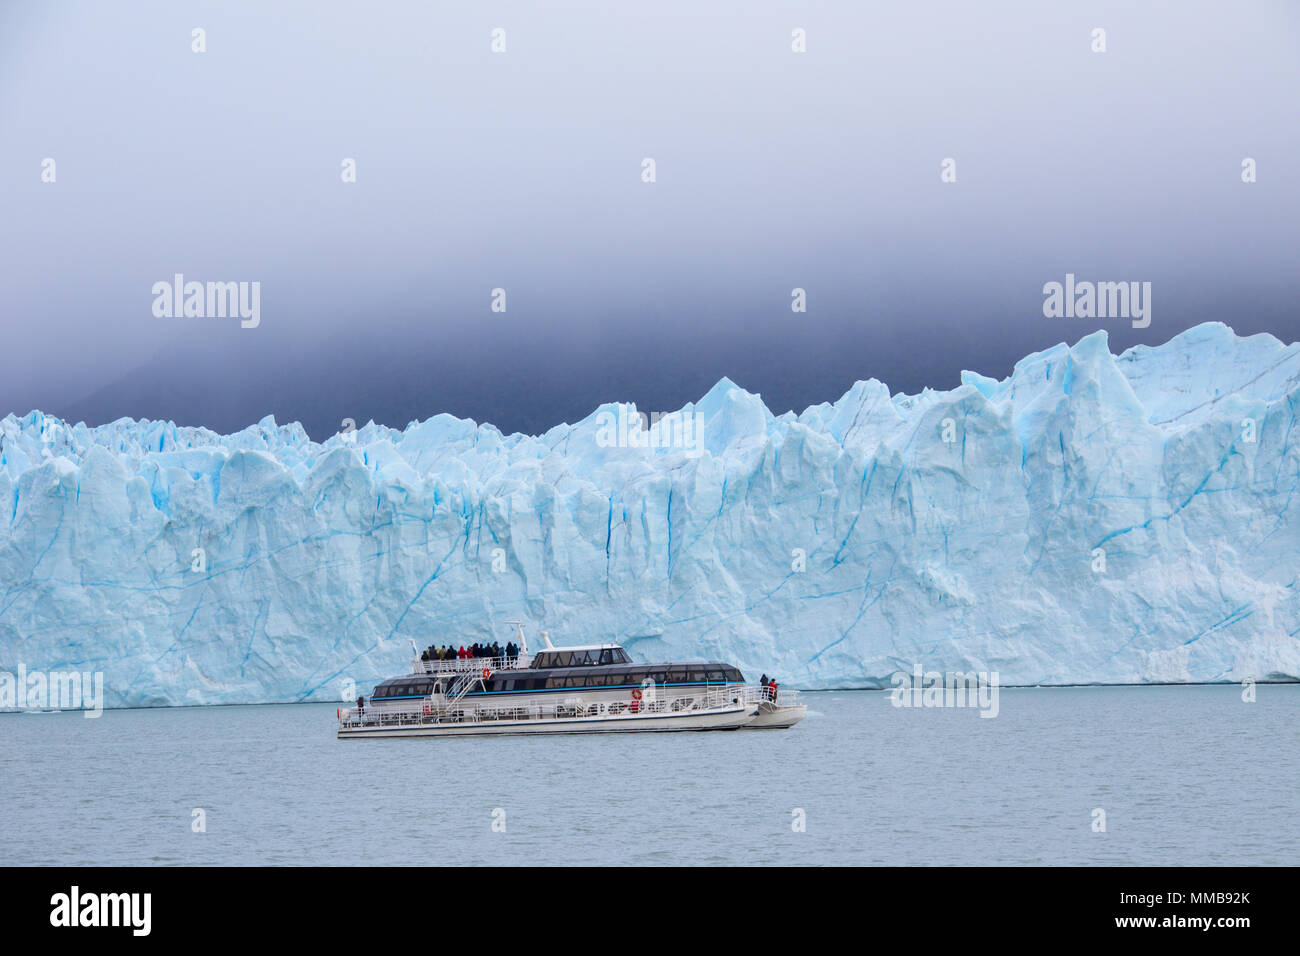 Sightseeing boat, Perito Moreno Glacier, Parque Nacional Los Glaciares, Argentina Stock Photo